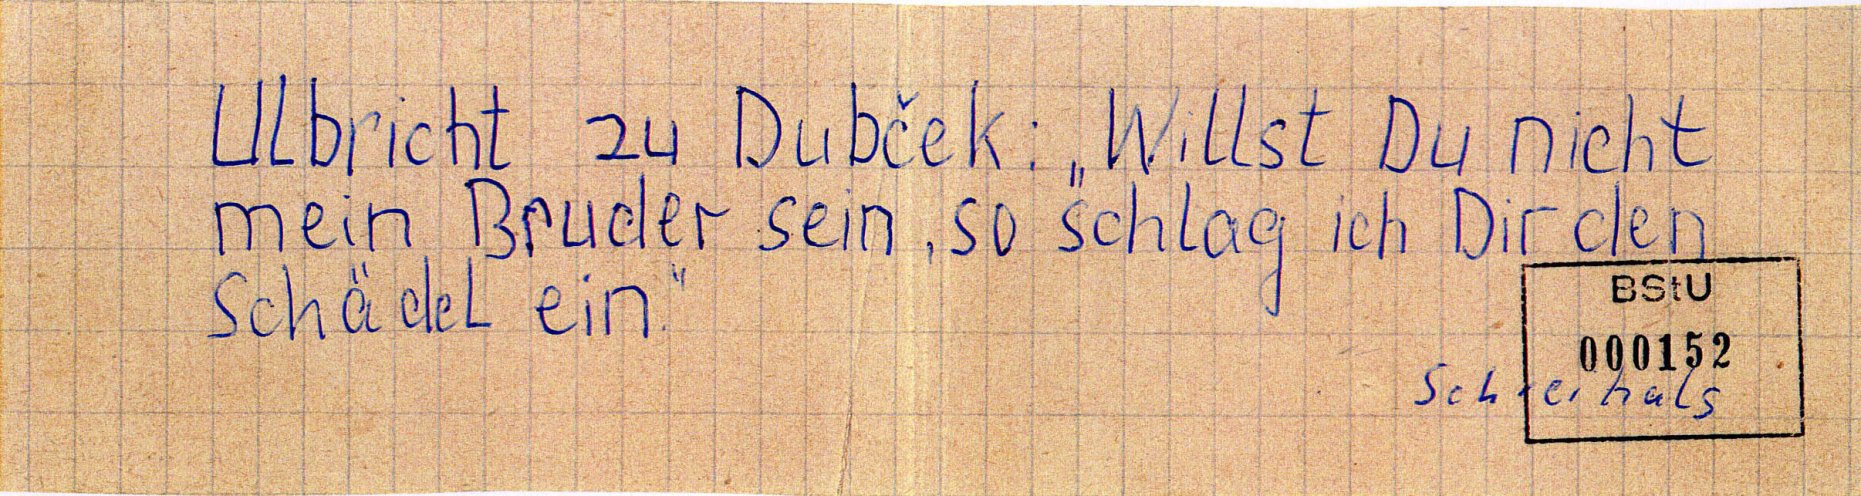 In Schwerin schreibt ein 21-jähriger Flugblätter gegen den Einmarsch der Warschauer-Pakt-Truppen in die CSSR und verteilt diese in Hausbriefkästen in seiner Wohngegend. Quelle: BStU, MfS, BV Schwerin, AU 11/69, GA Bd. 3, Bl. 152, Seite 6 von 10